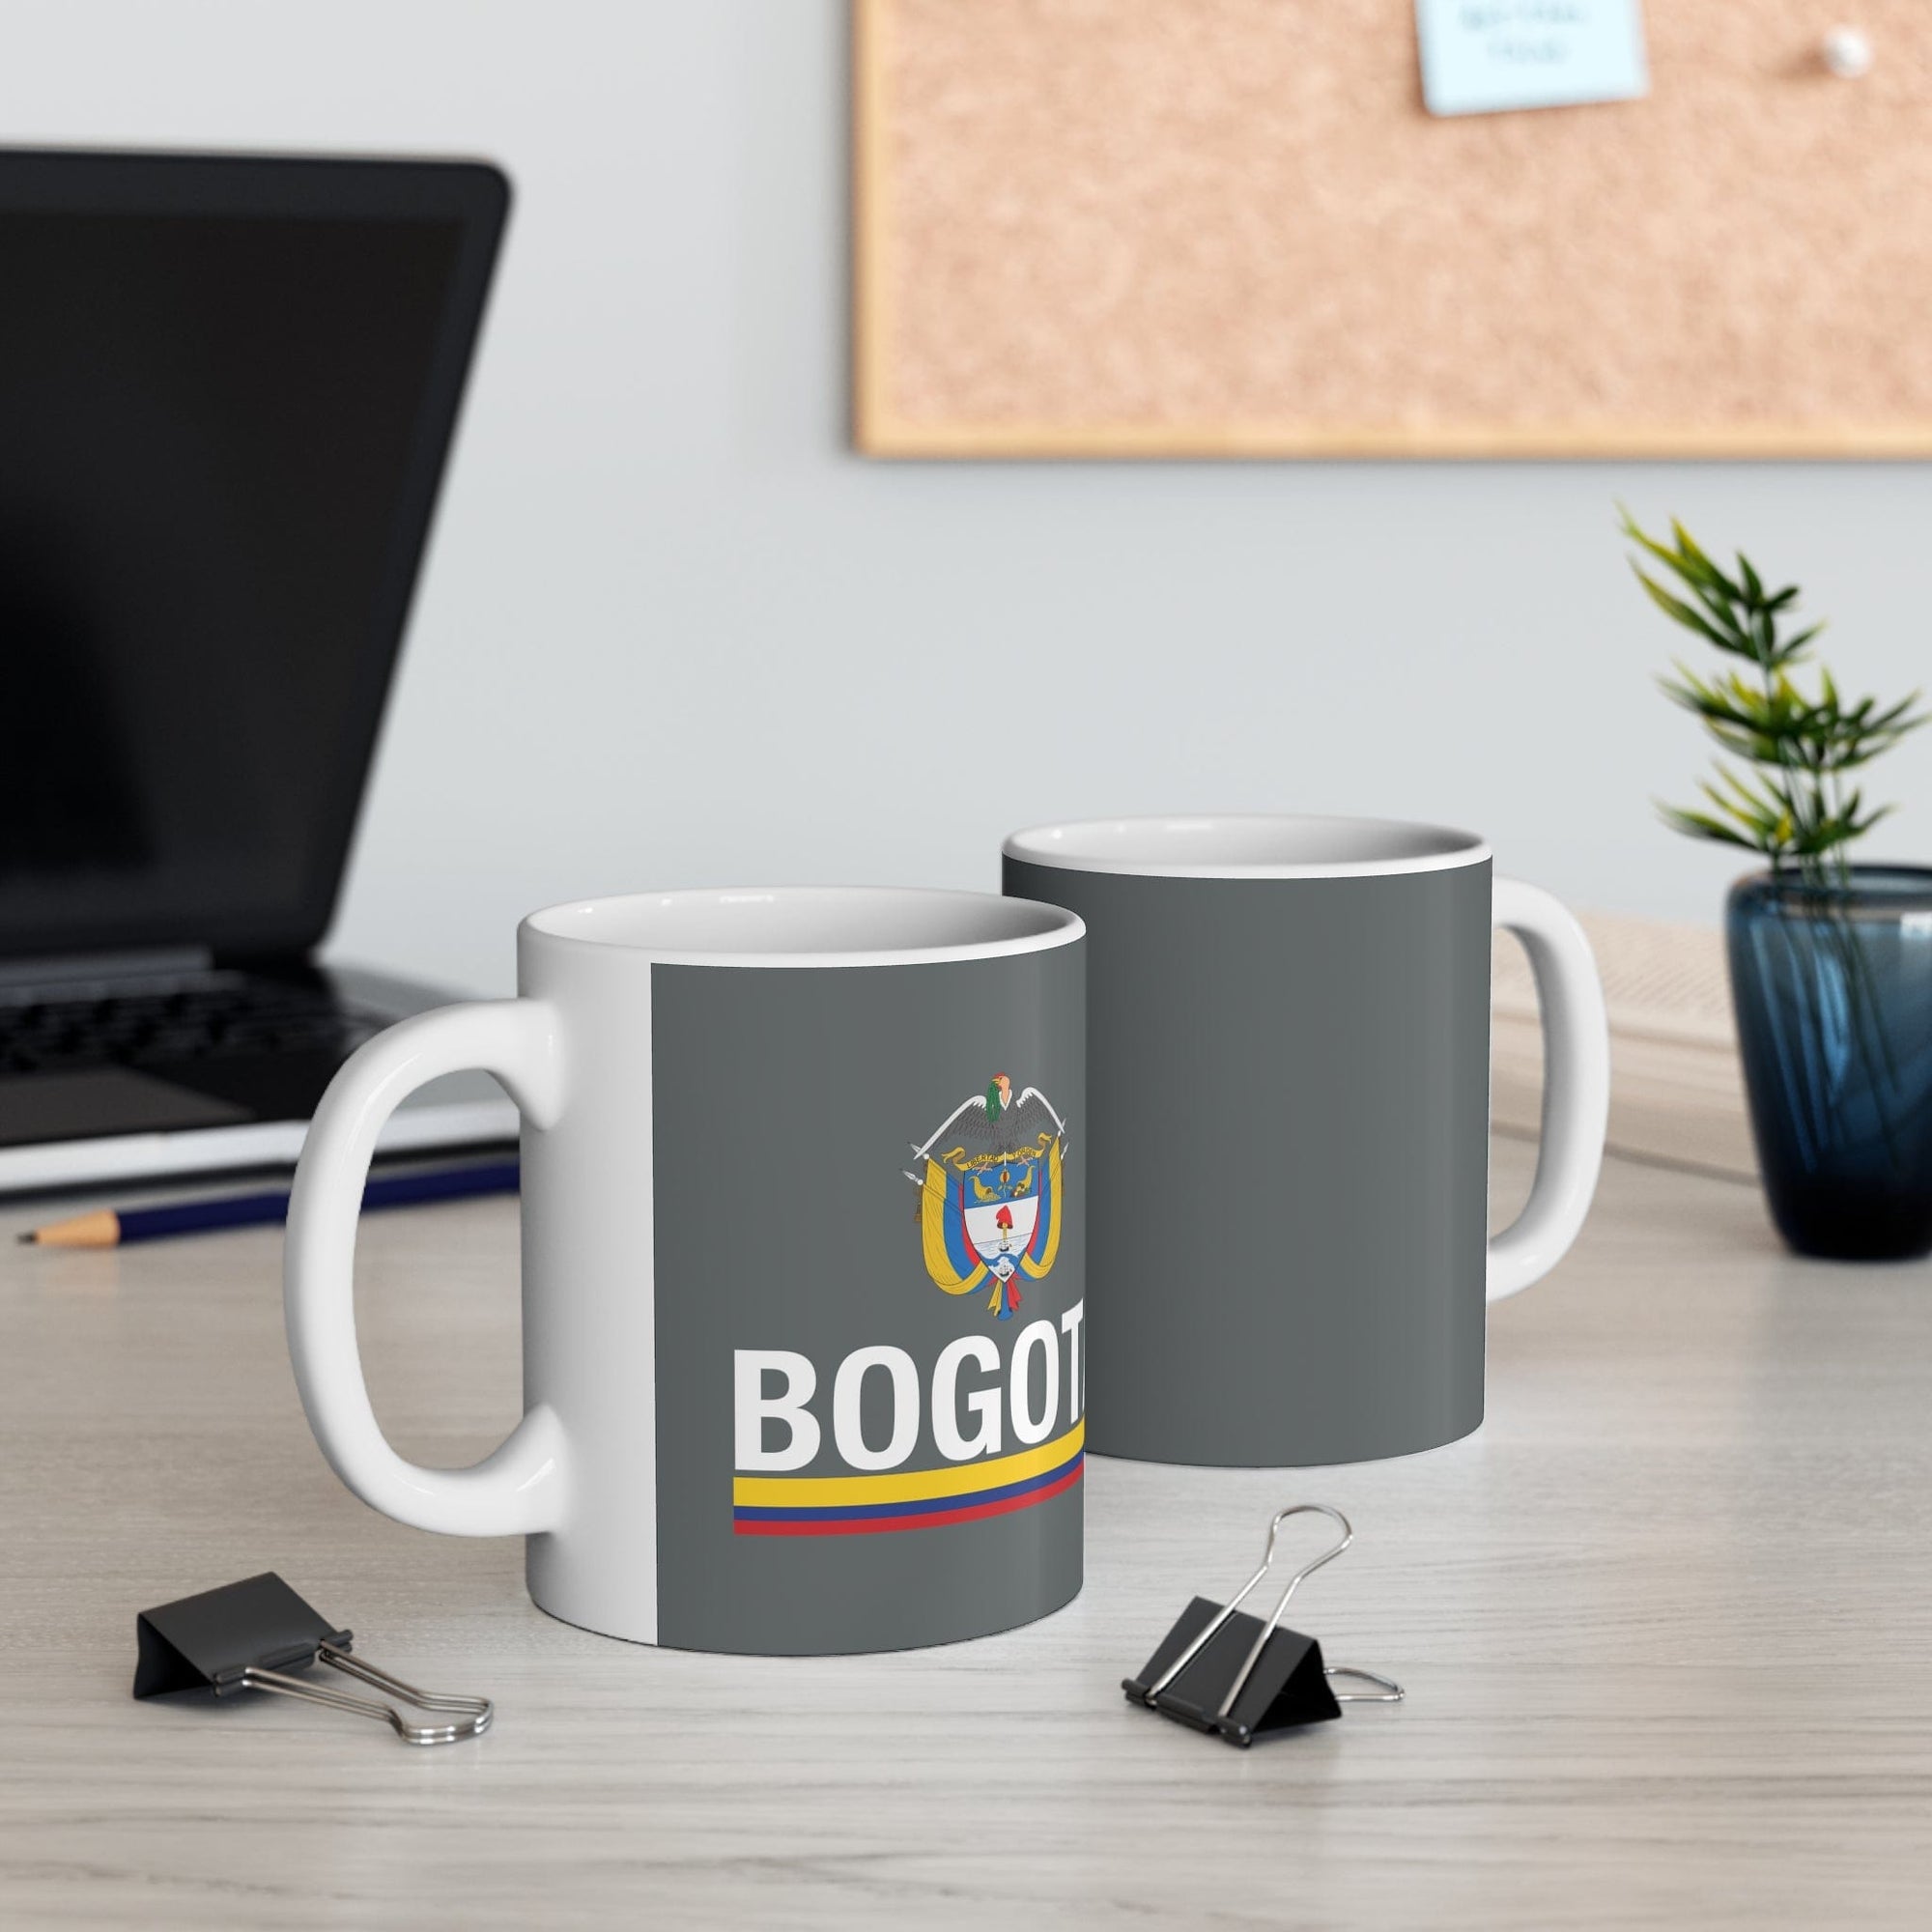 BOGOTA - Awesome Ceramic Mug, Exclusive Design